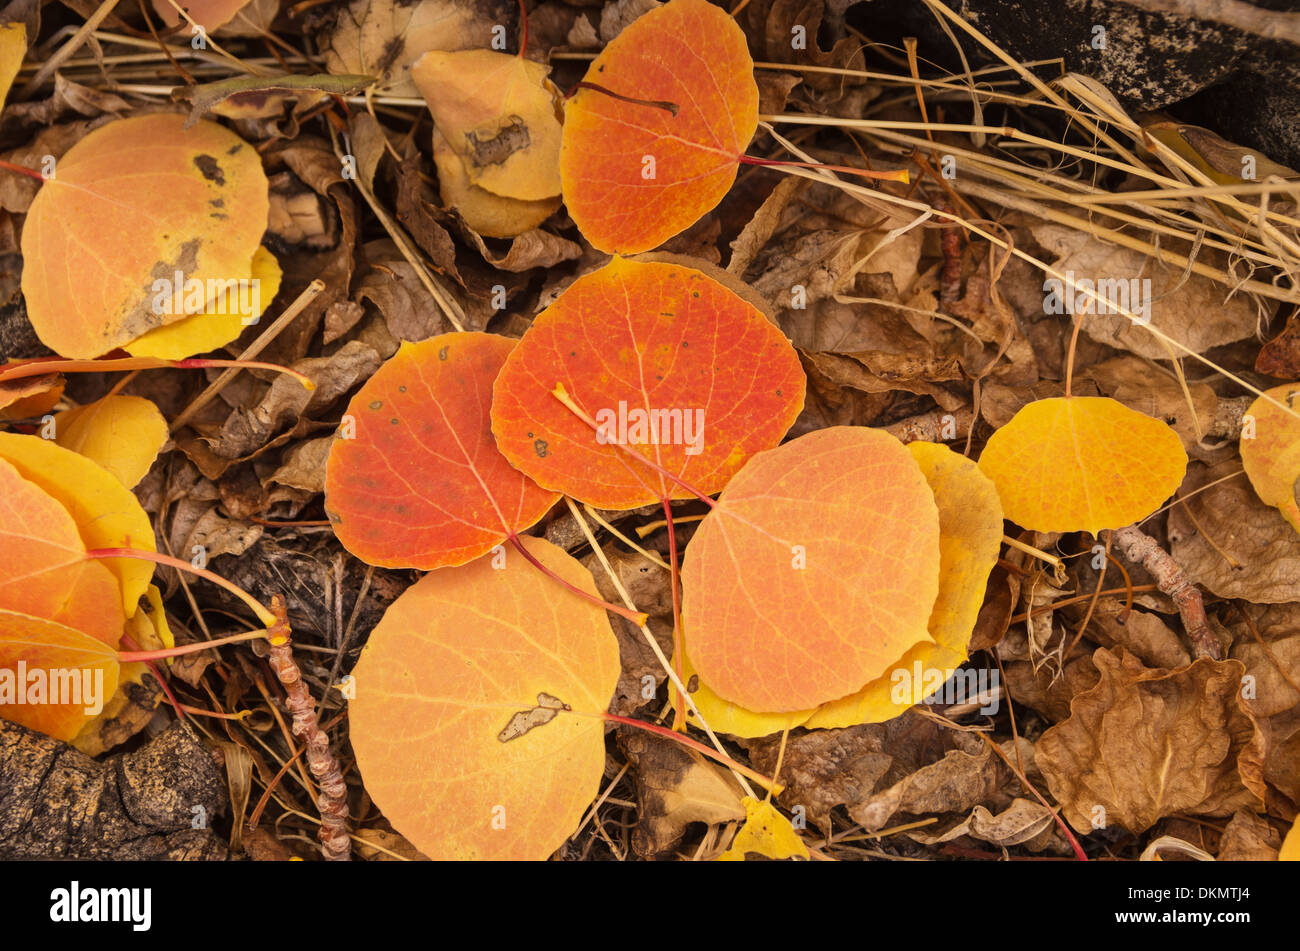 fallen Sie Espe Blätter mit roten, Orangen und gelben Farbe auf den Boden mit älteren braune Blätter Stockfoto